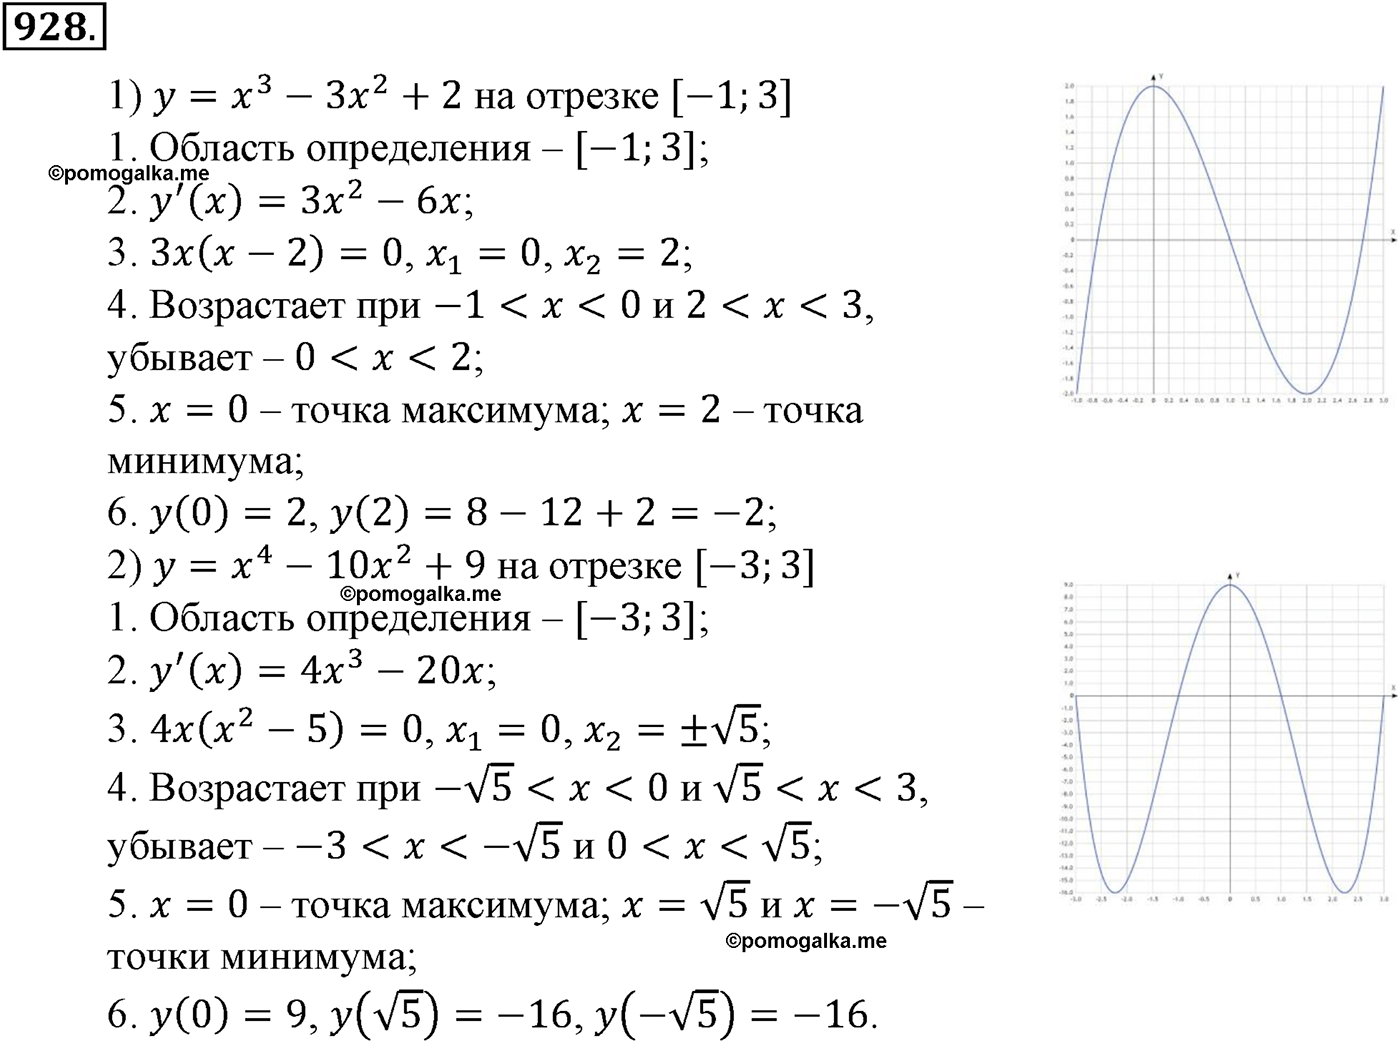 разбор задачи №928 по алгебре за 10-11 класс из учебника Алимова, Колягина